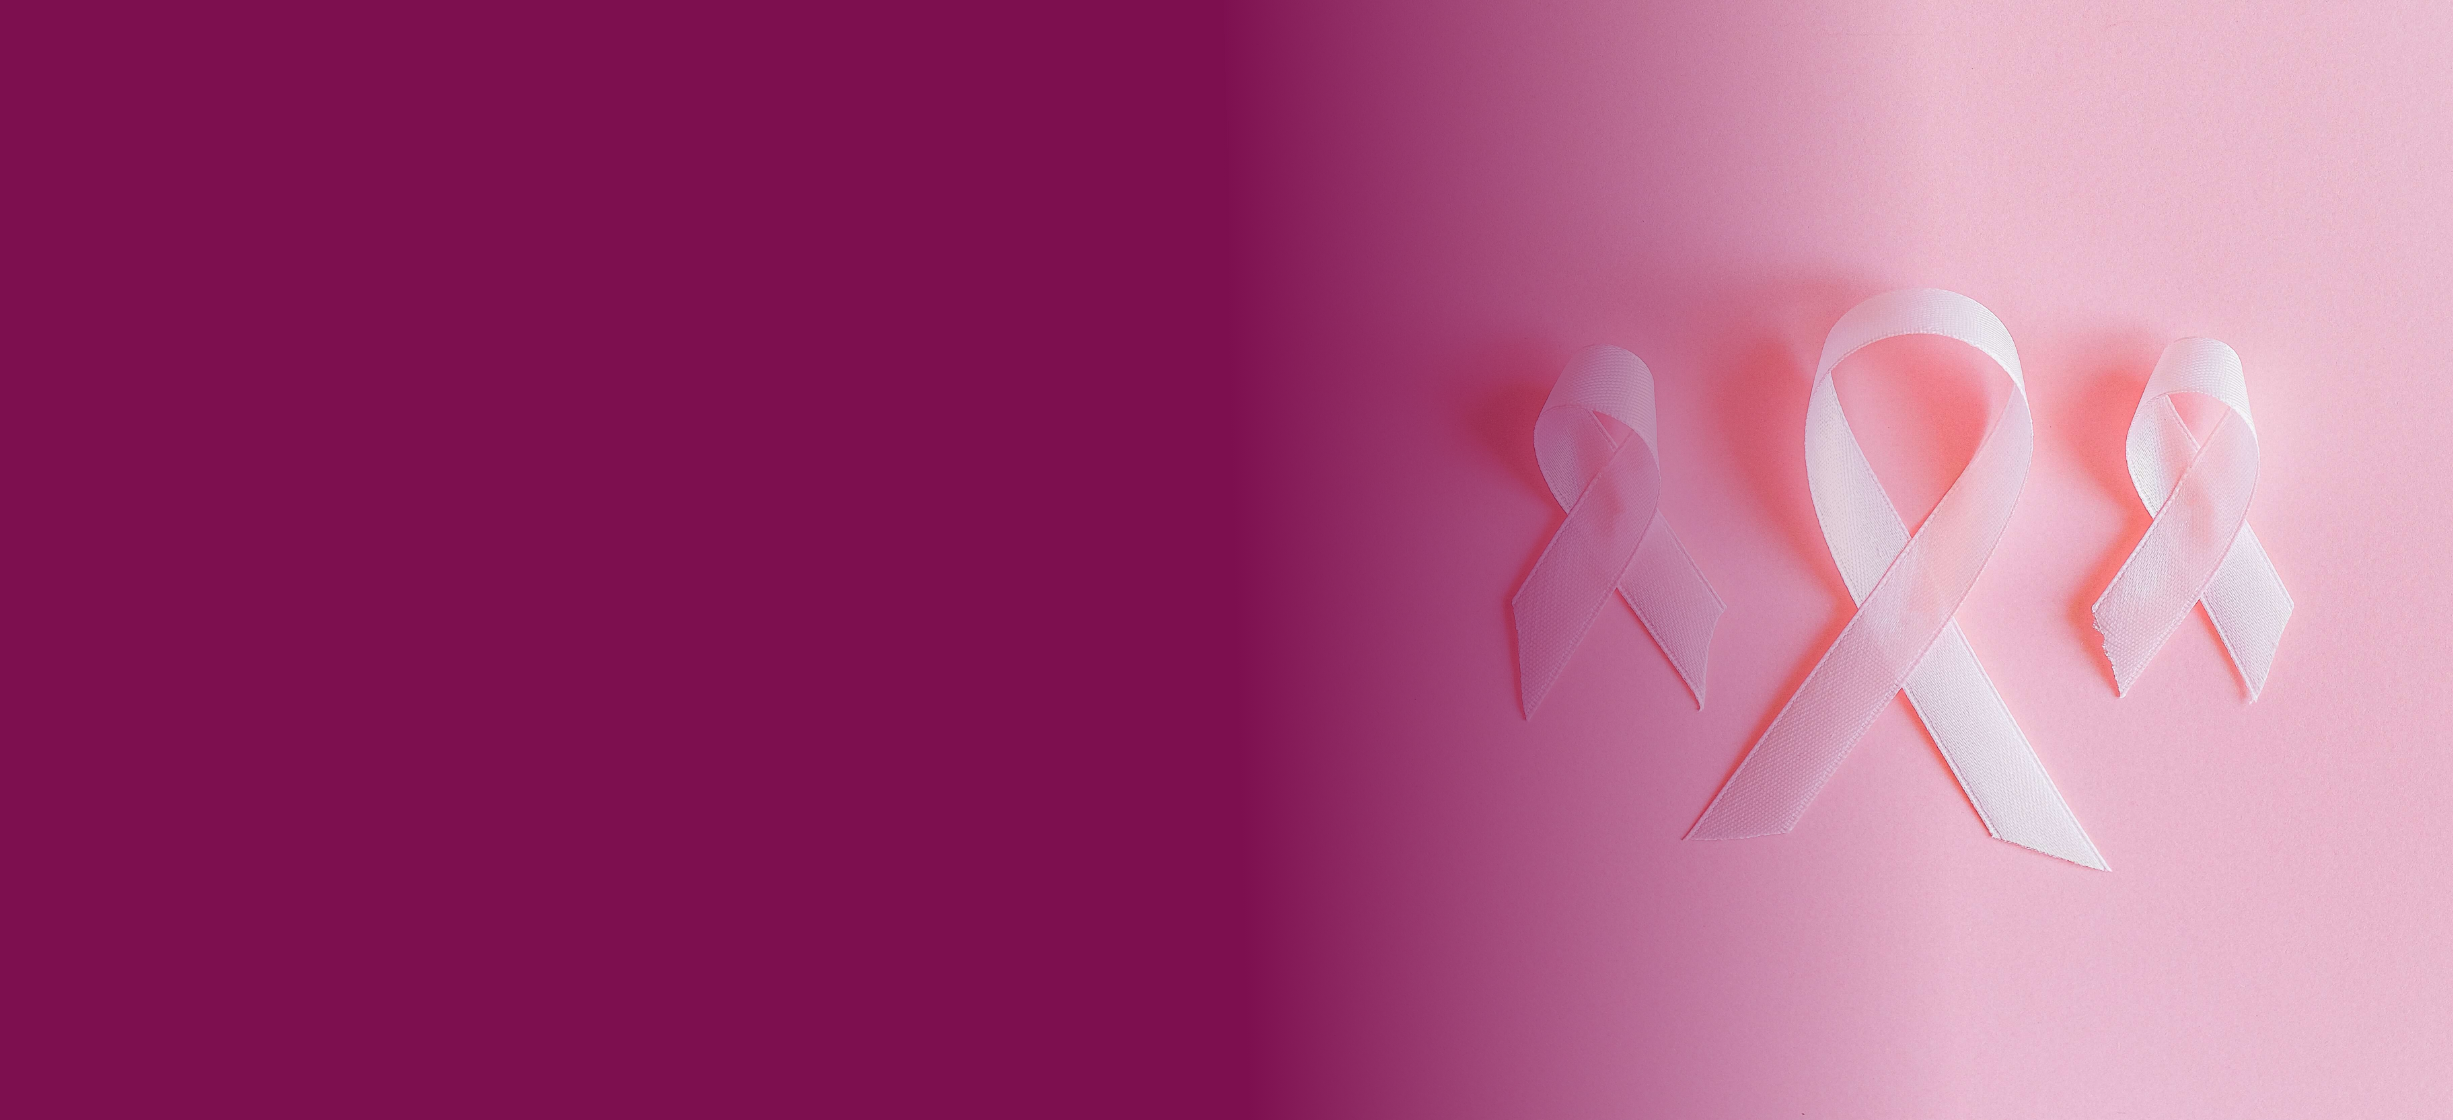 זה שלך! פלטפורמה דיגיטלית למיצוי זכויות לנשים המתמודדות עם סרטן השד